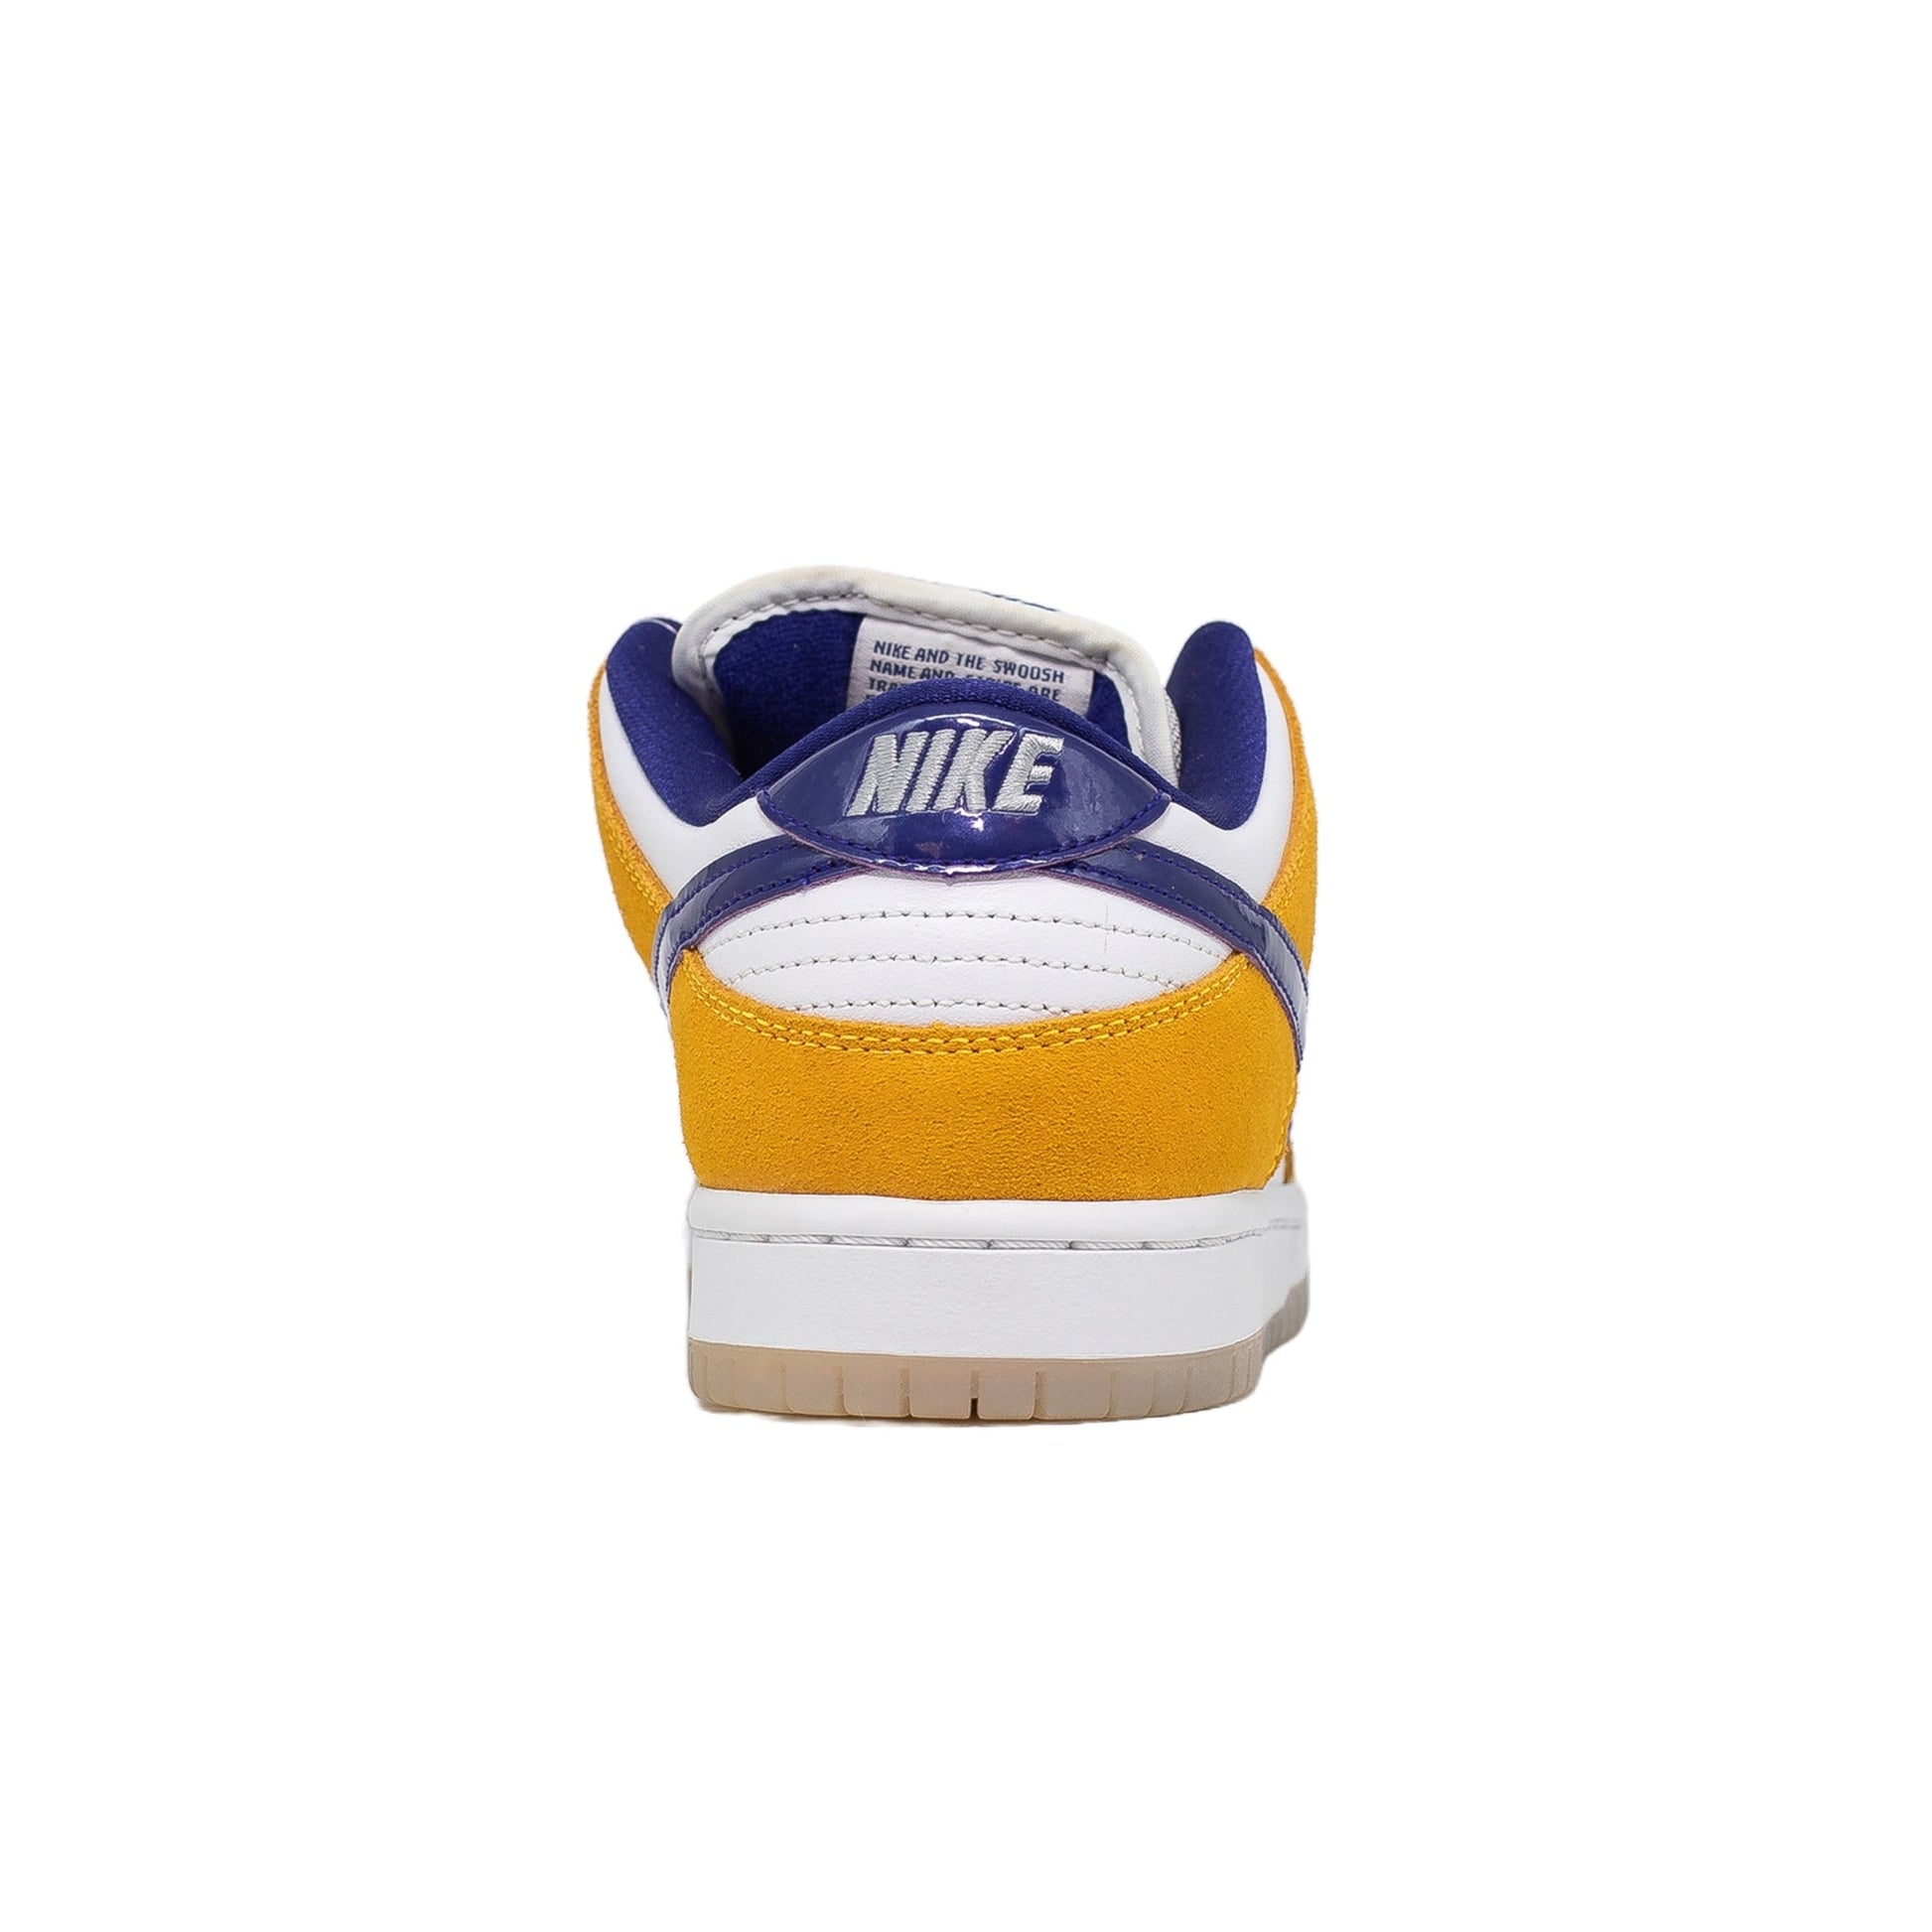 Nike SB Dunk Low, Laser Orange